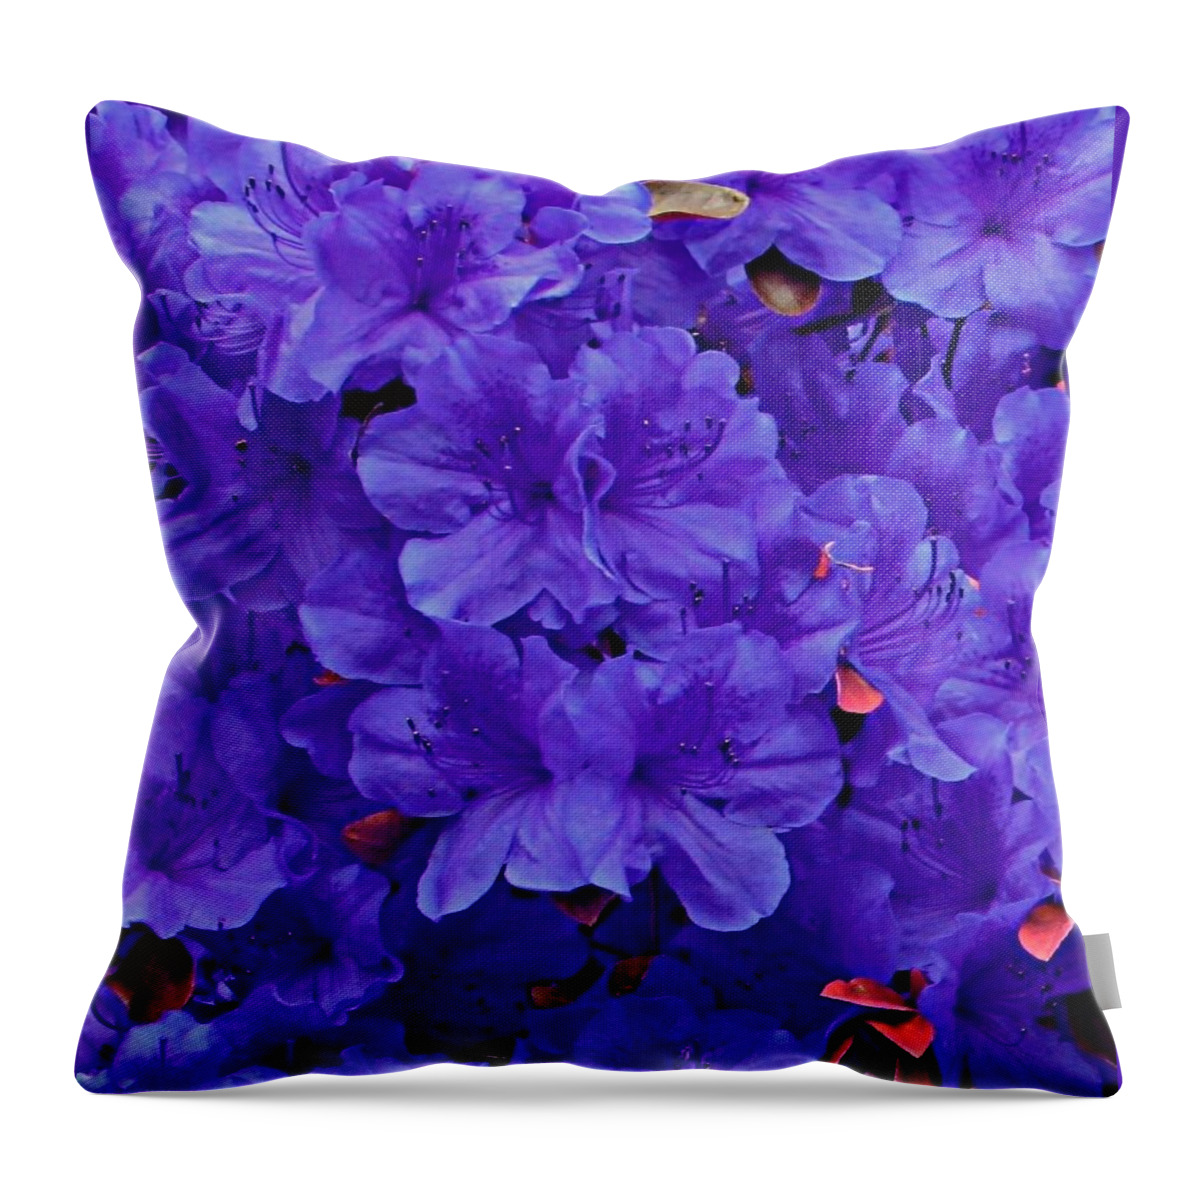 Royal Purple Cushion